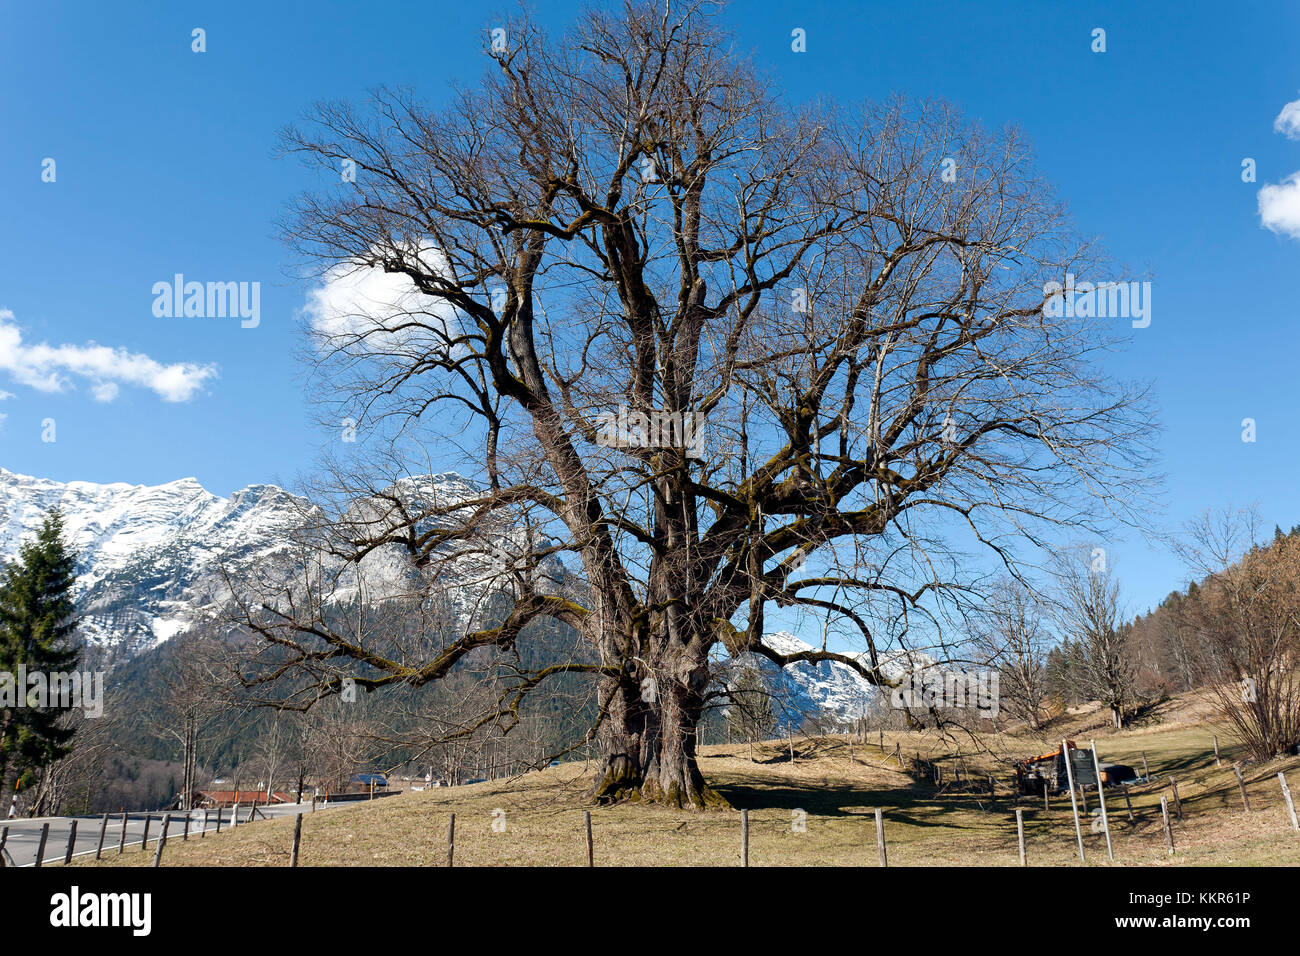 1000-año-viejo hindenburglinde en la primavera, el verano de cal, Tilia platyphyllos árbol, taubensee, ramsau, Berchtesgaden, Alemania Foto de stock